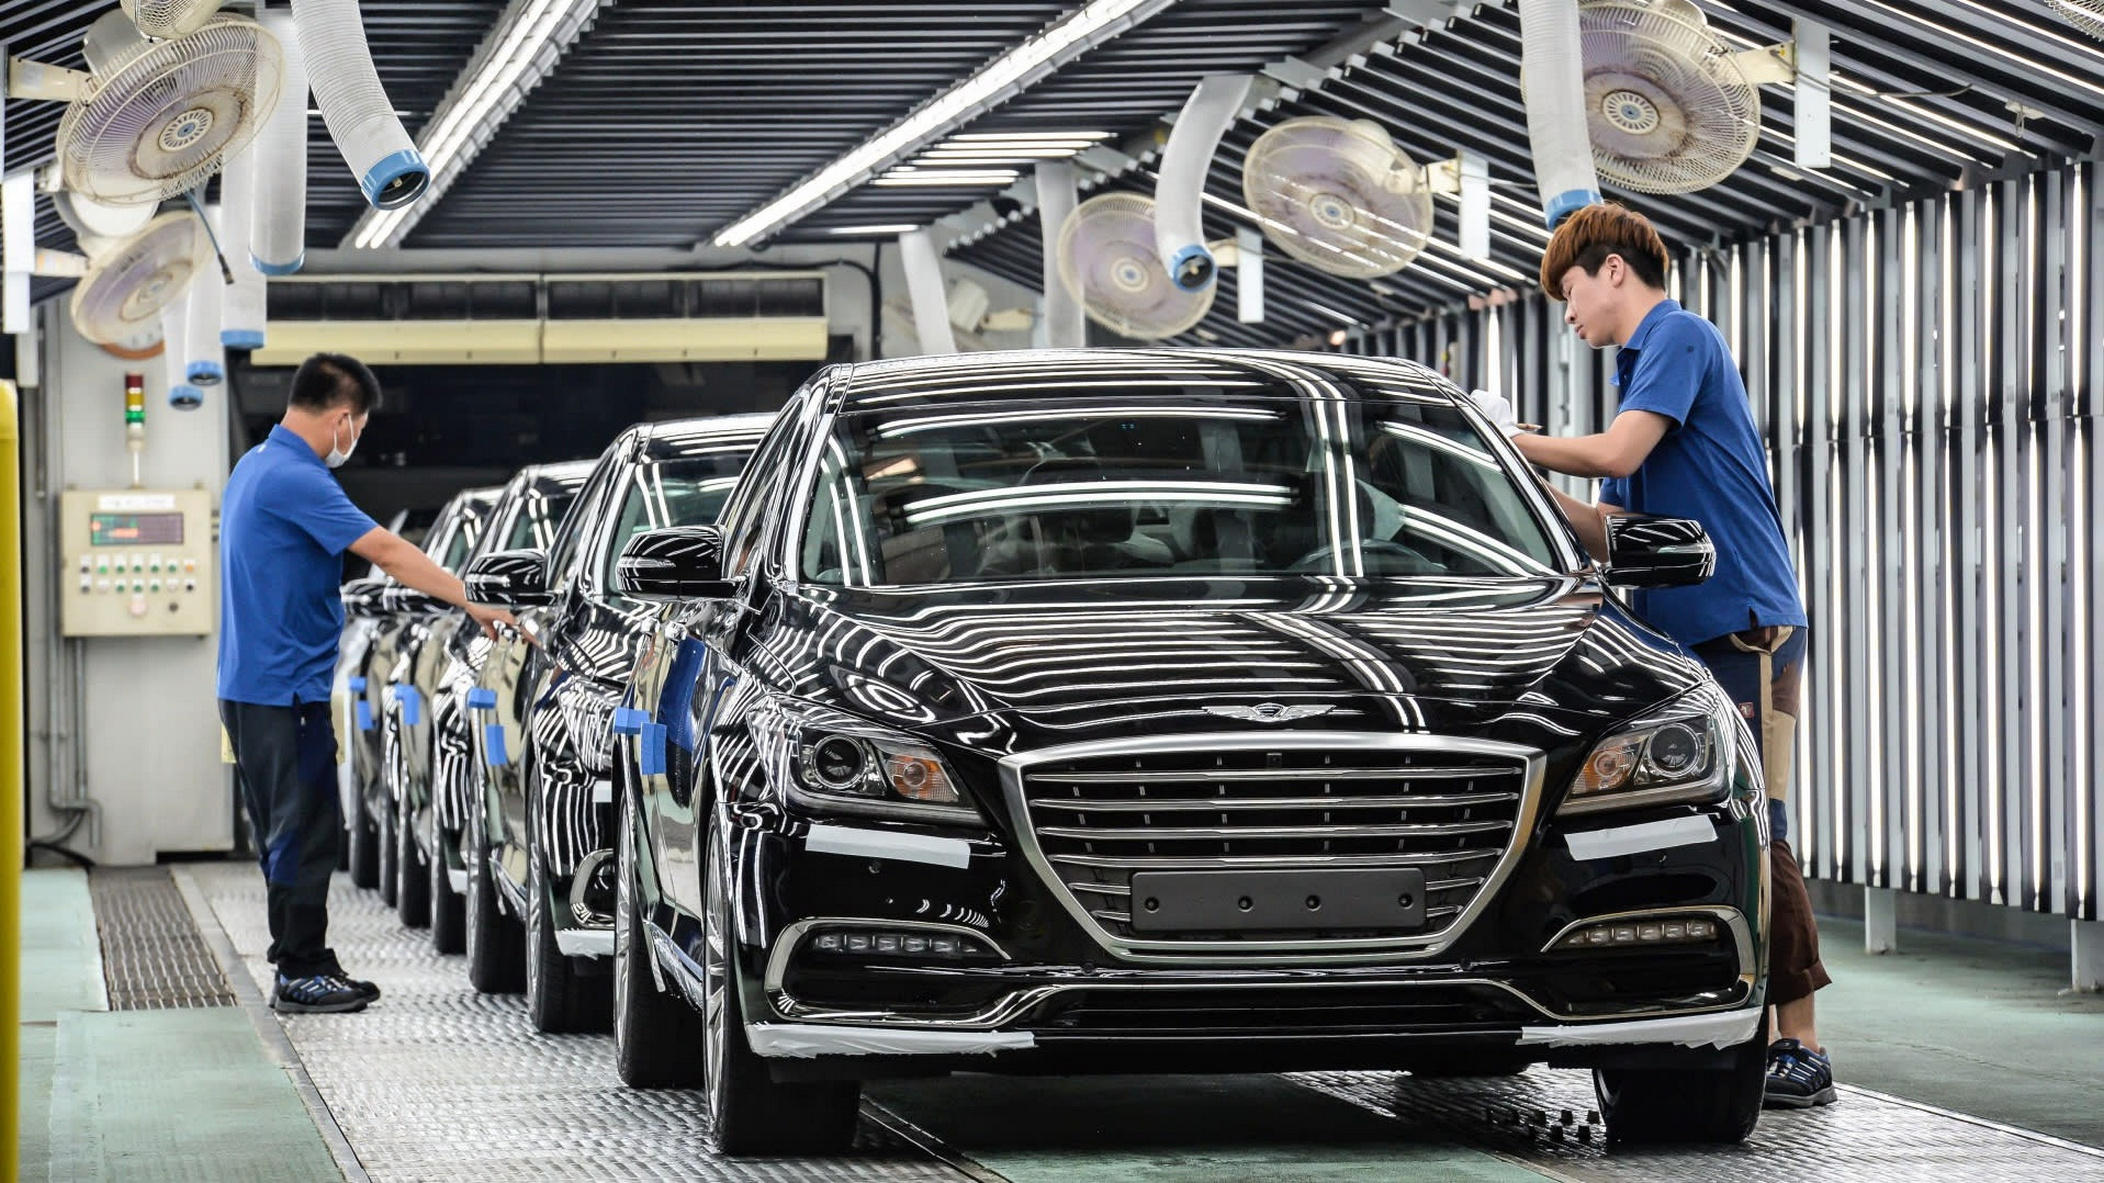 Tham vọng đưa ngành công nghiệp ô tô ngang hàng với các cường quốc khác của tổng thống Park Chung Hee